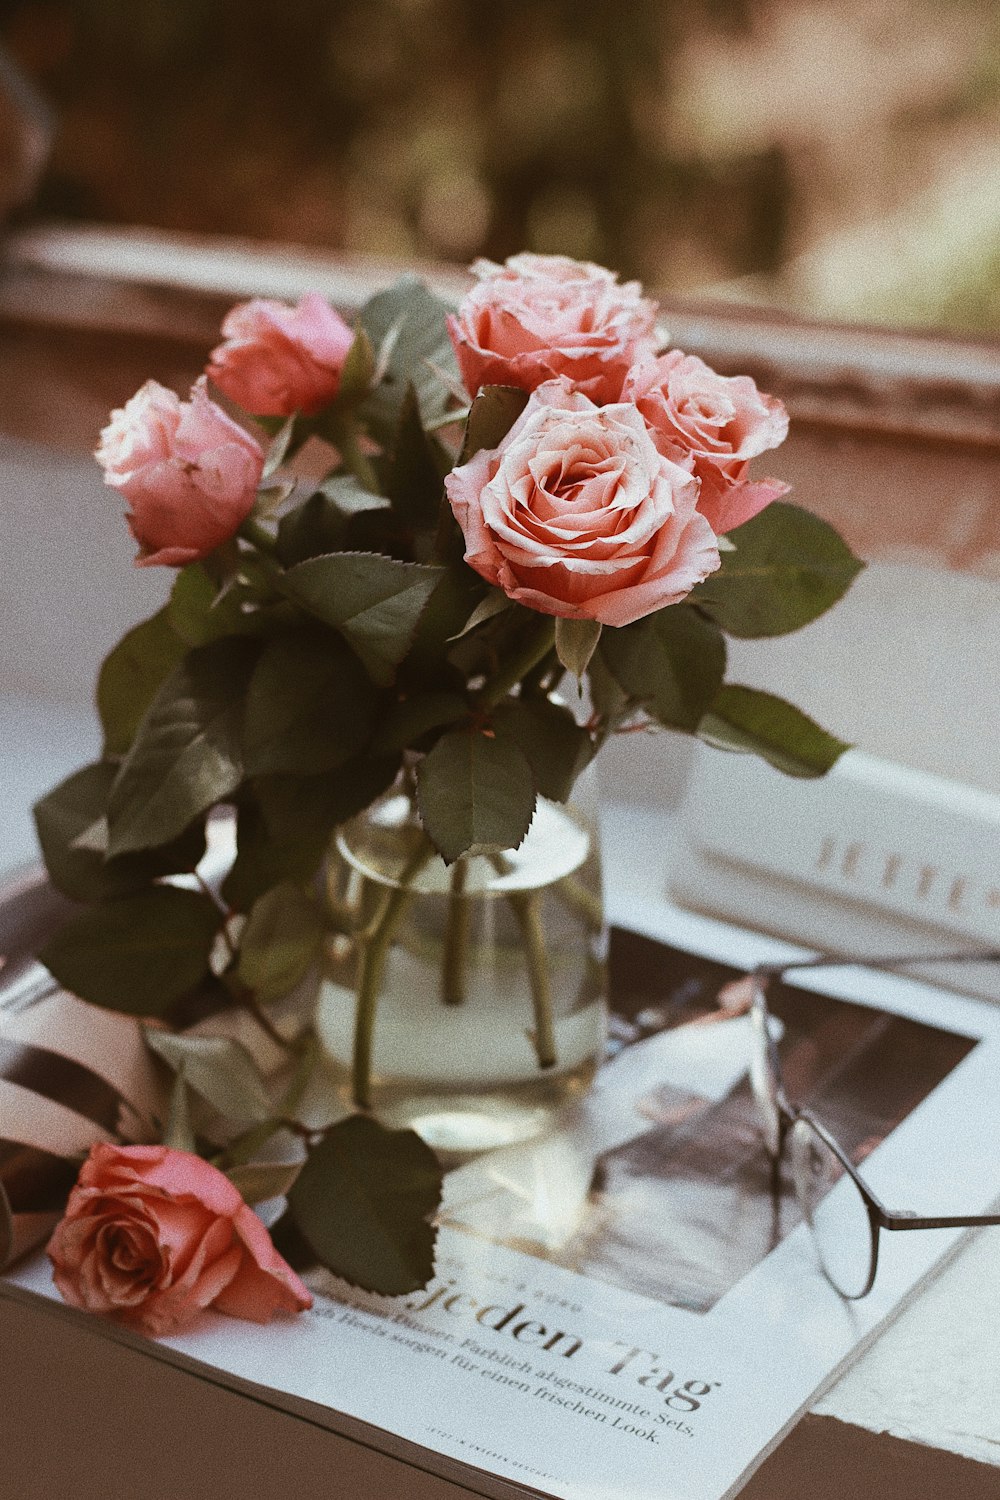 透明なガラスの花瓶に描かれたピンクのバラ